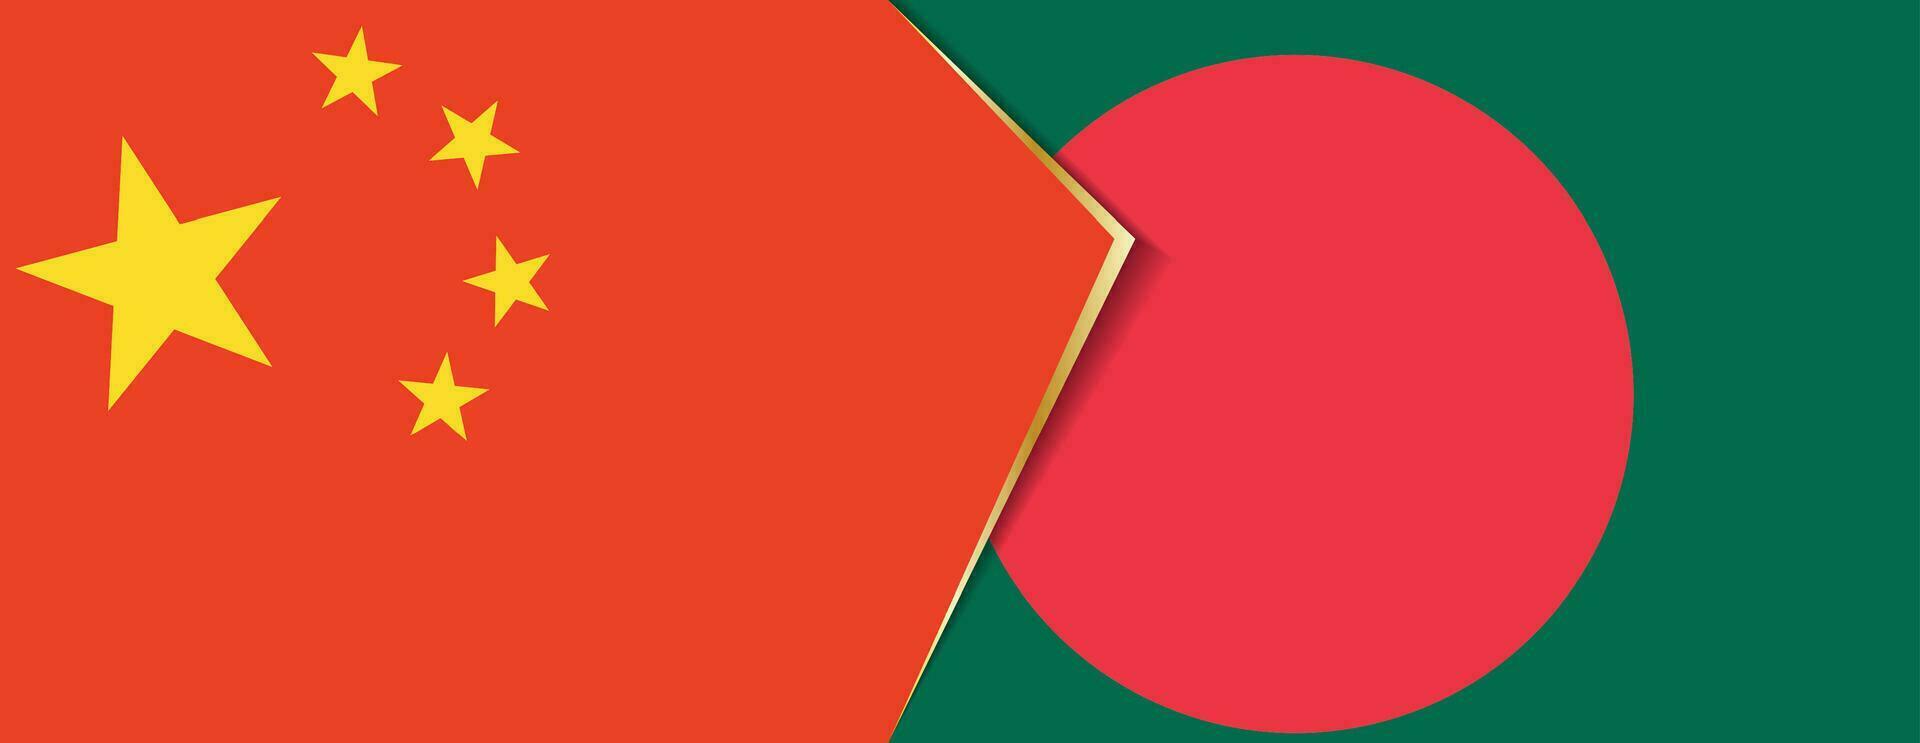 China e Bangladesh bandeiras, dois vetor bandeiras.